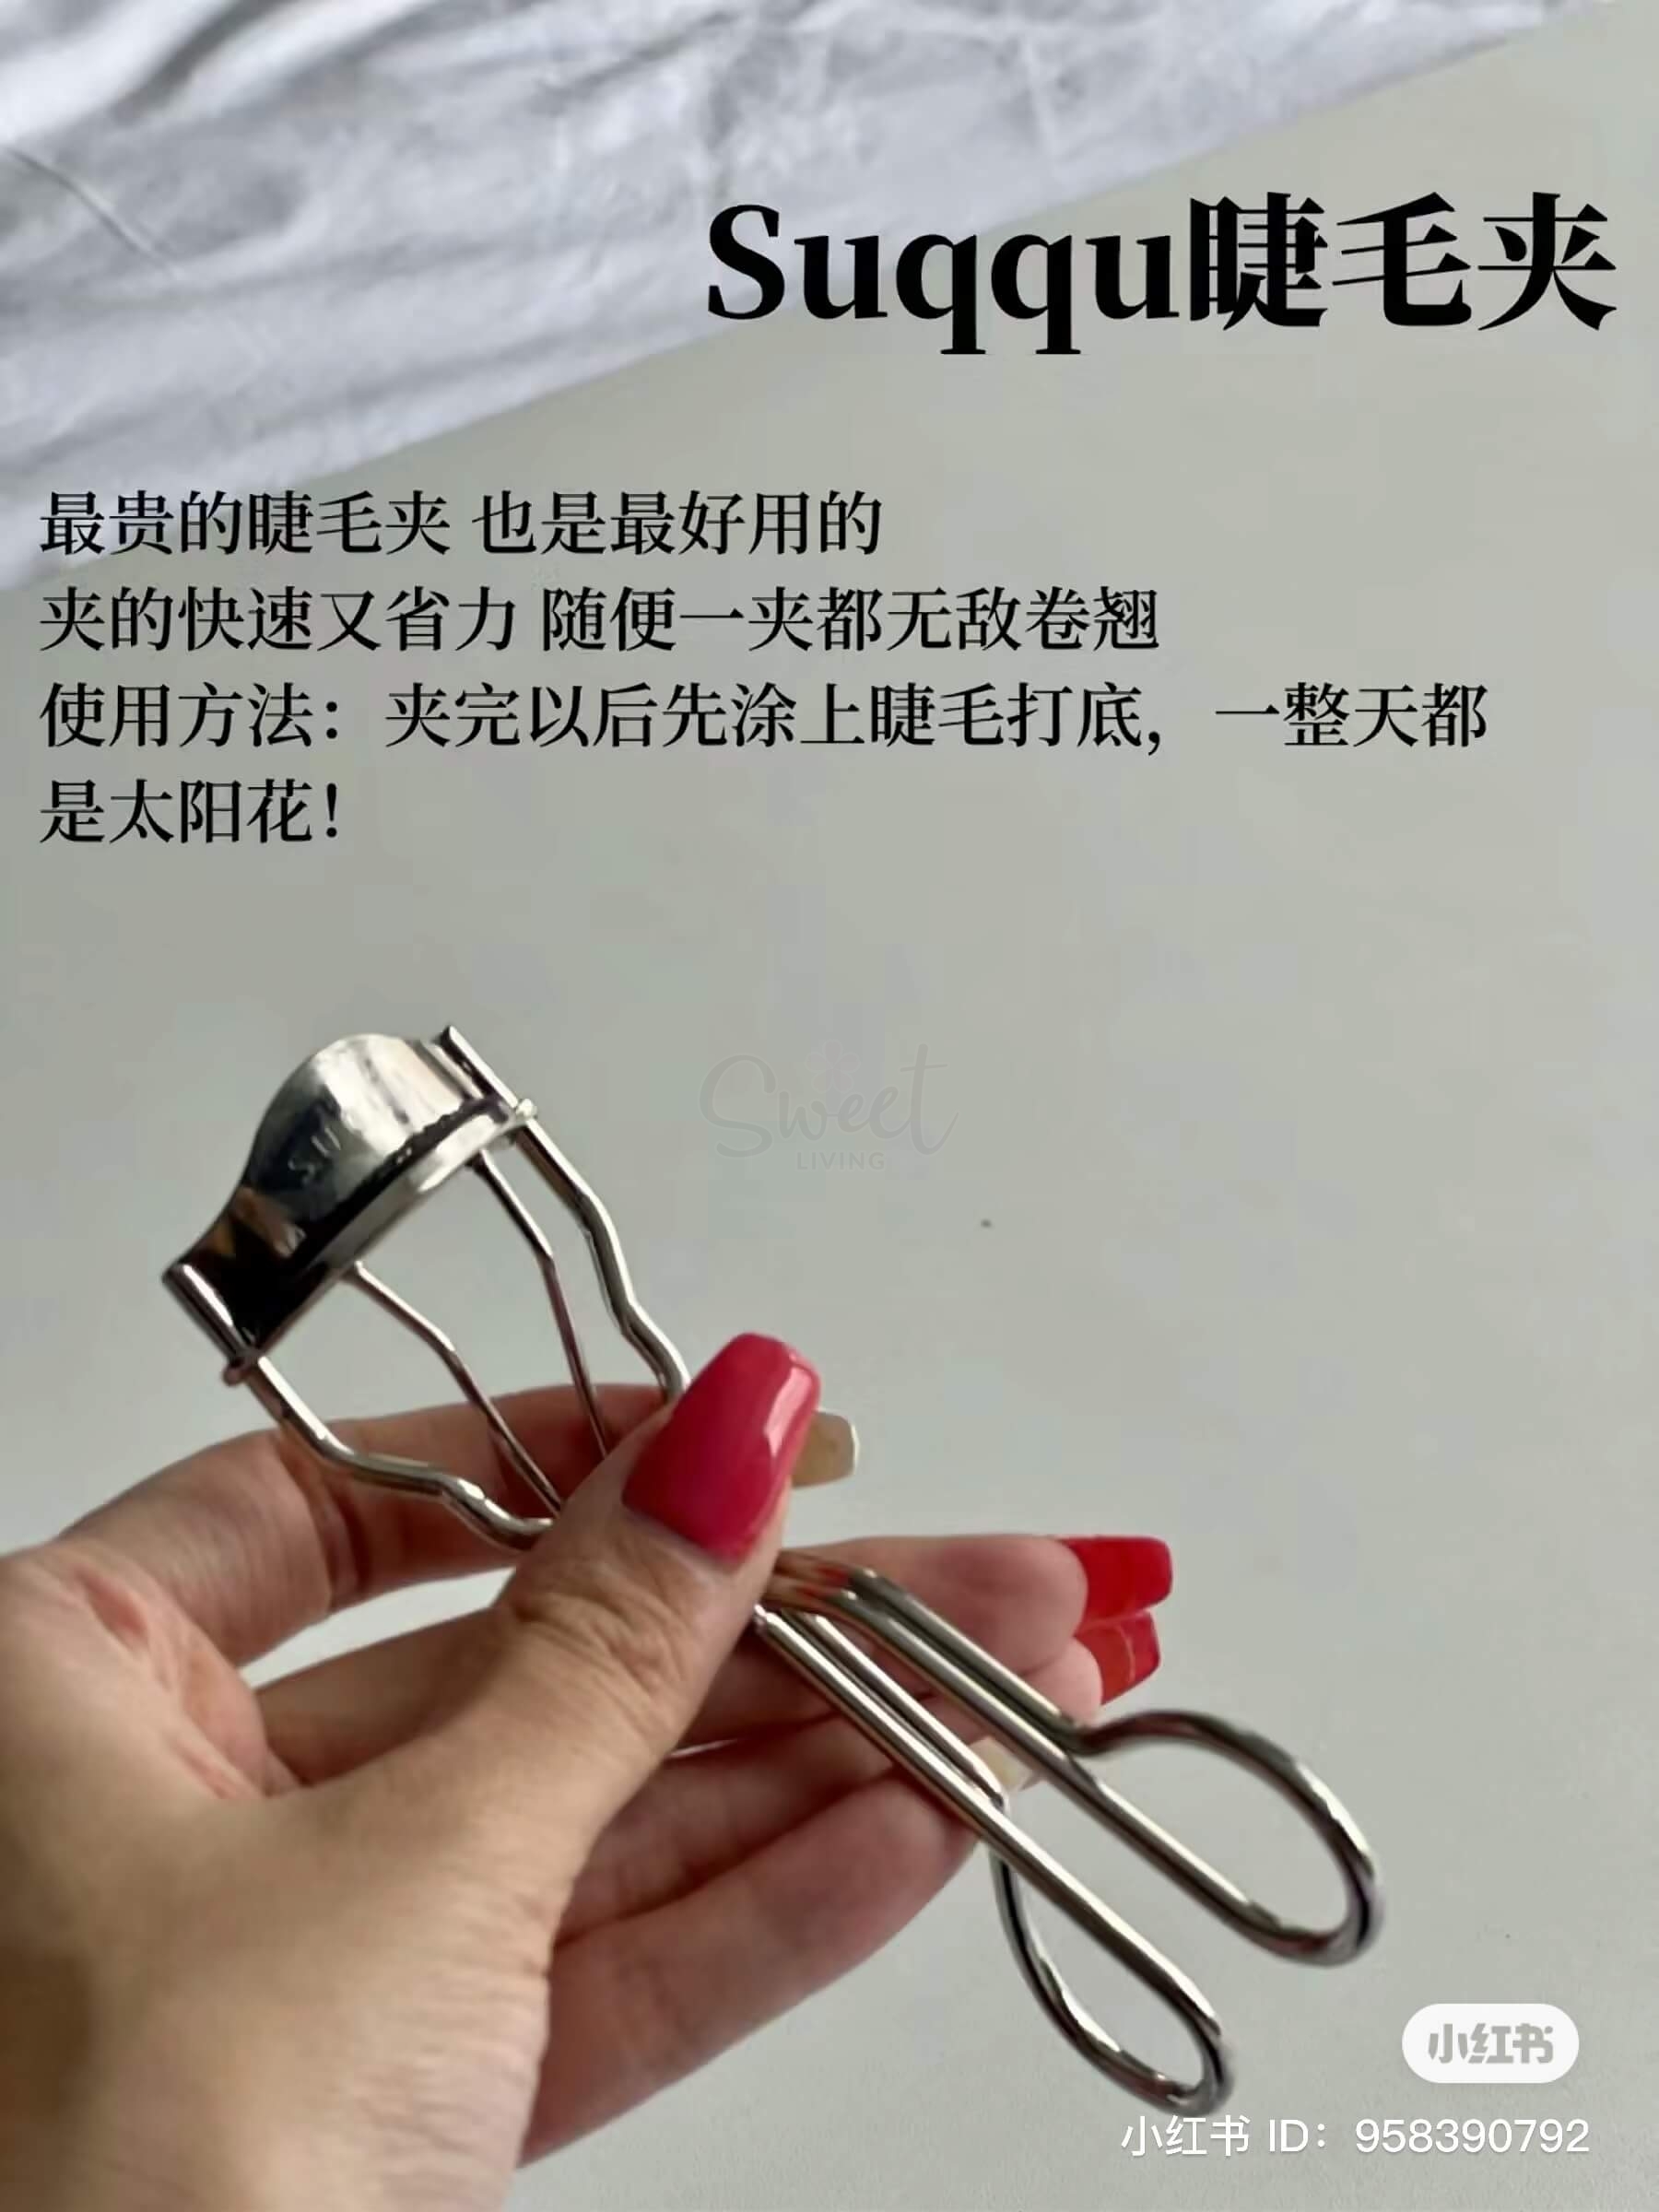 【日本 Suqqu】EYELASH CURLER  晶采曲线睫毛夹 附送胶垫 -  - 4@ - Sweet Living